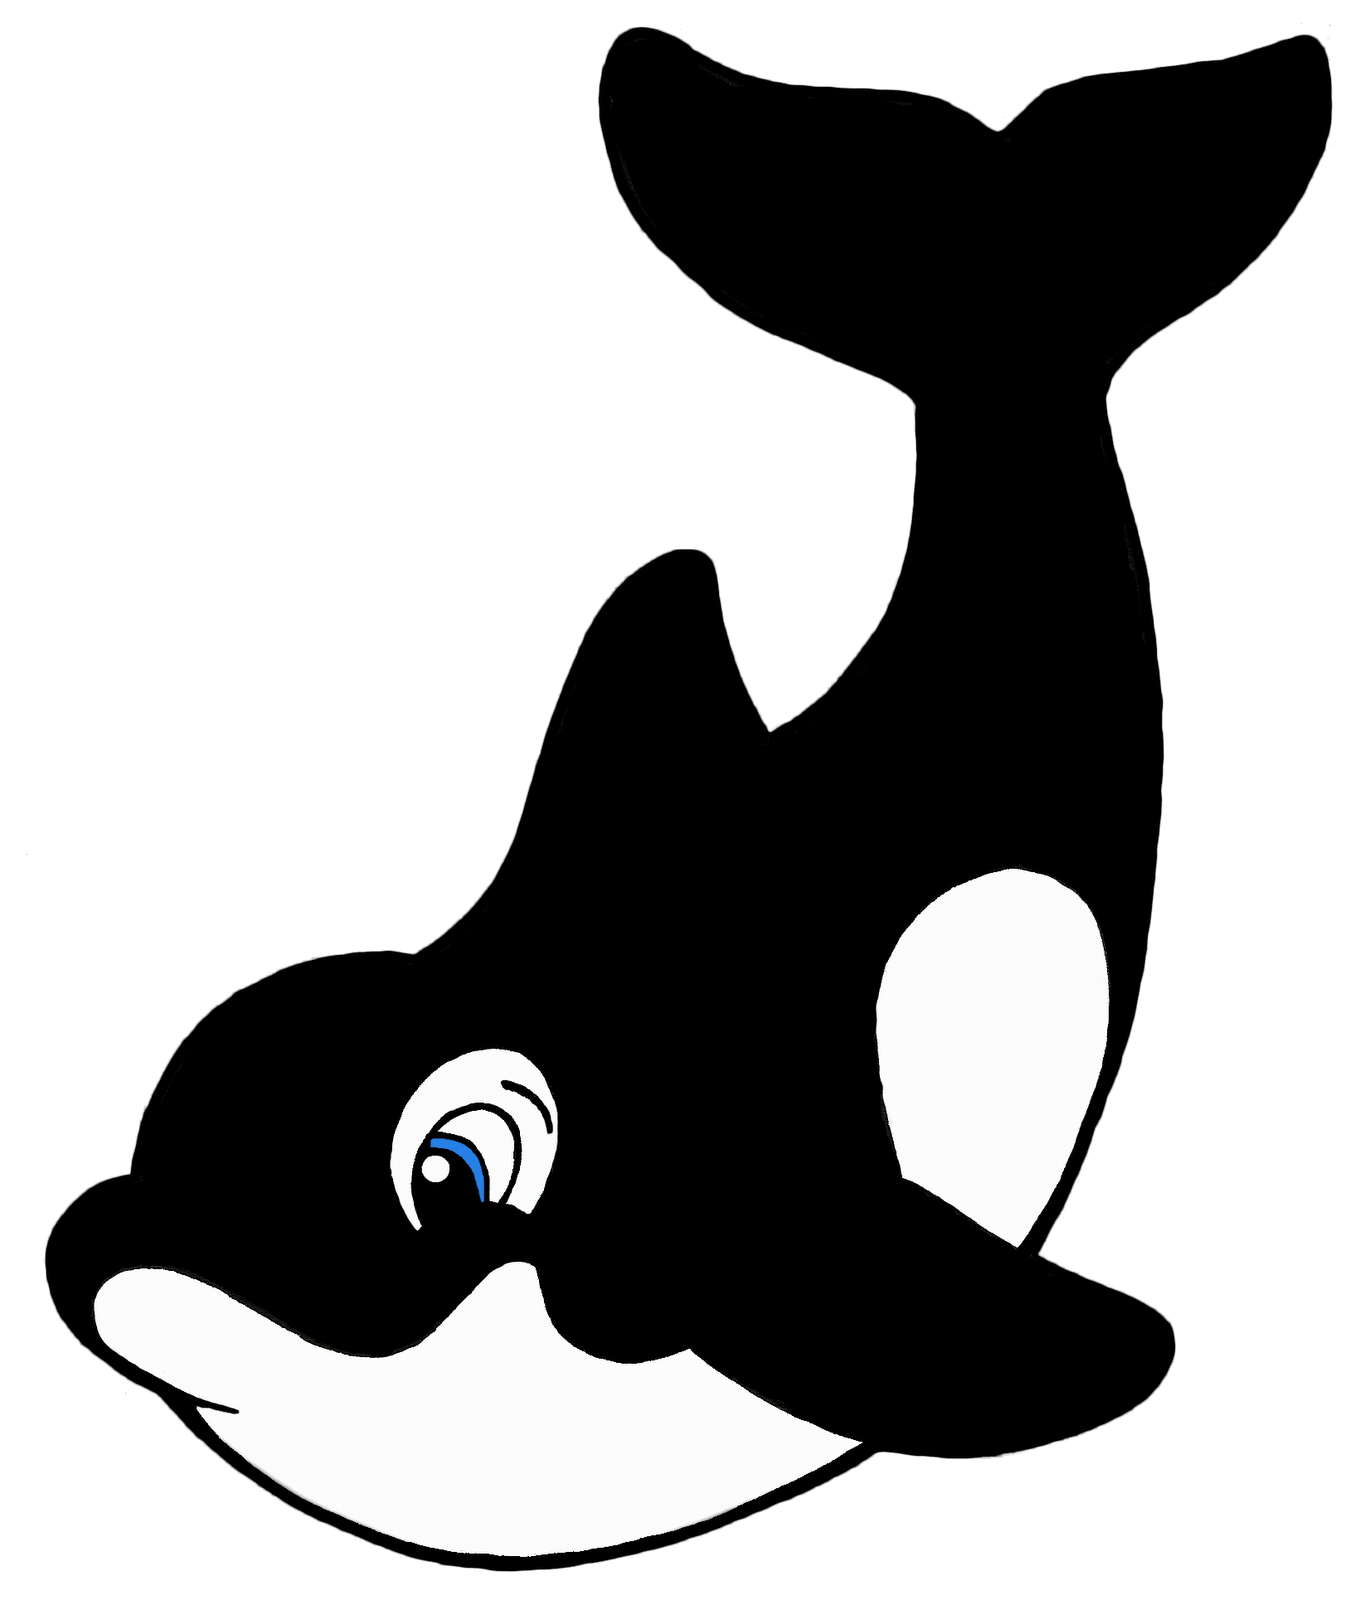 Orca whale cli... Shamu Whale Cartoon Killer whale clip art